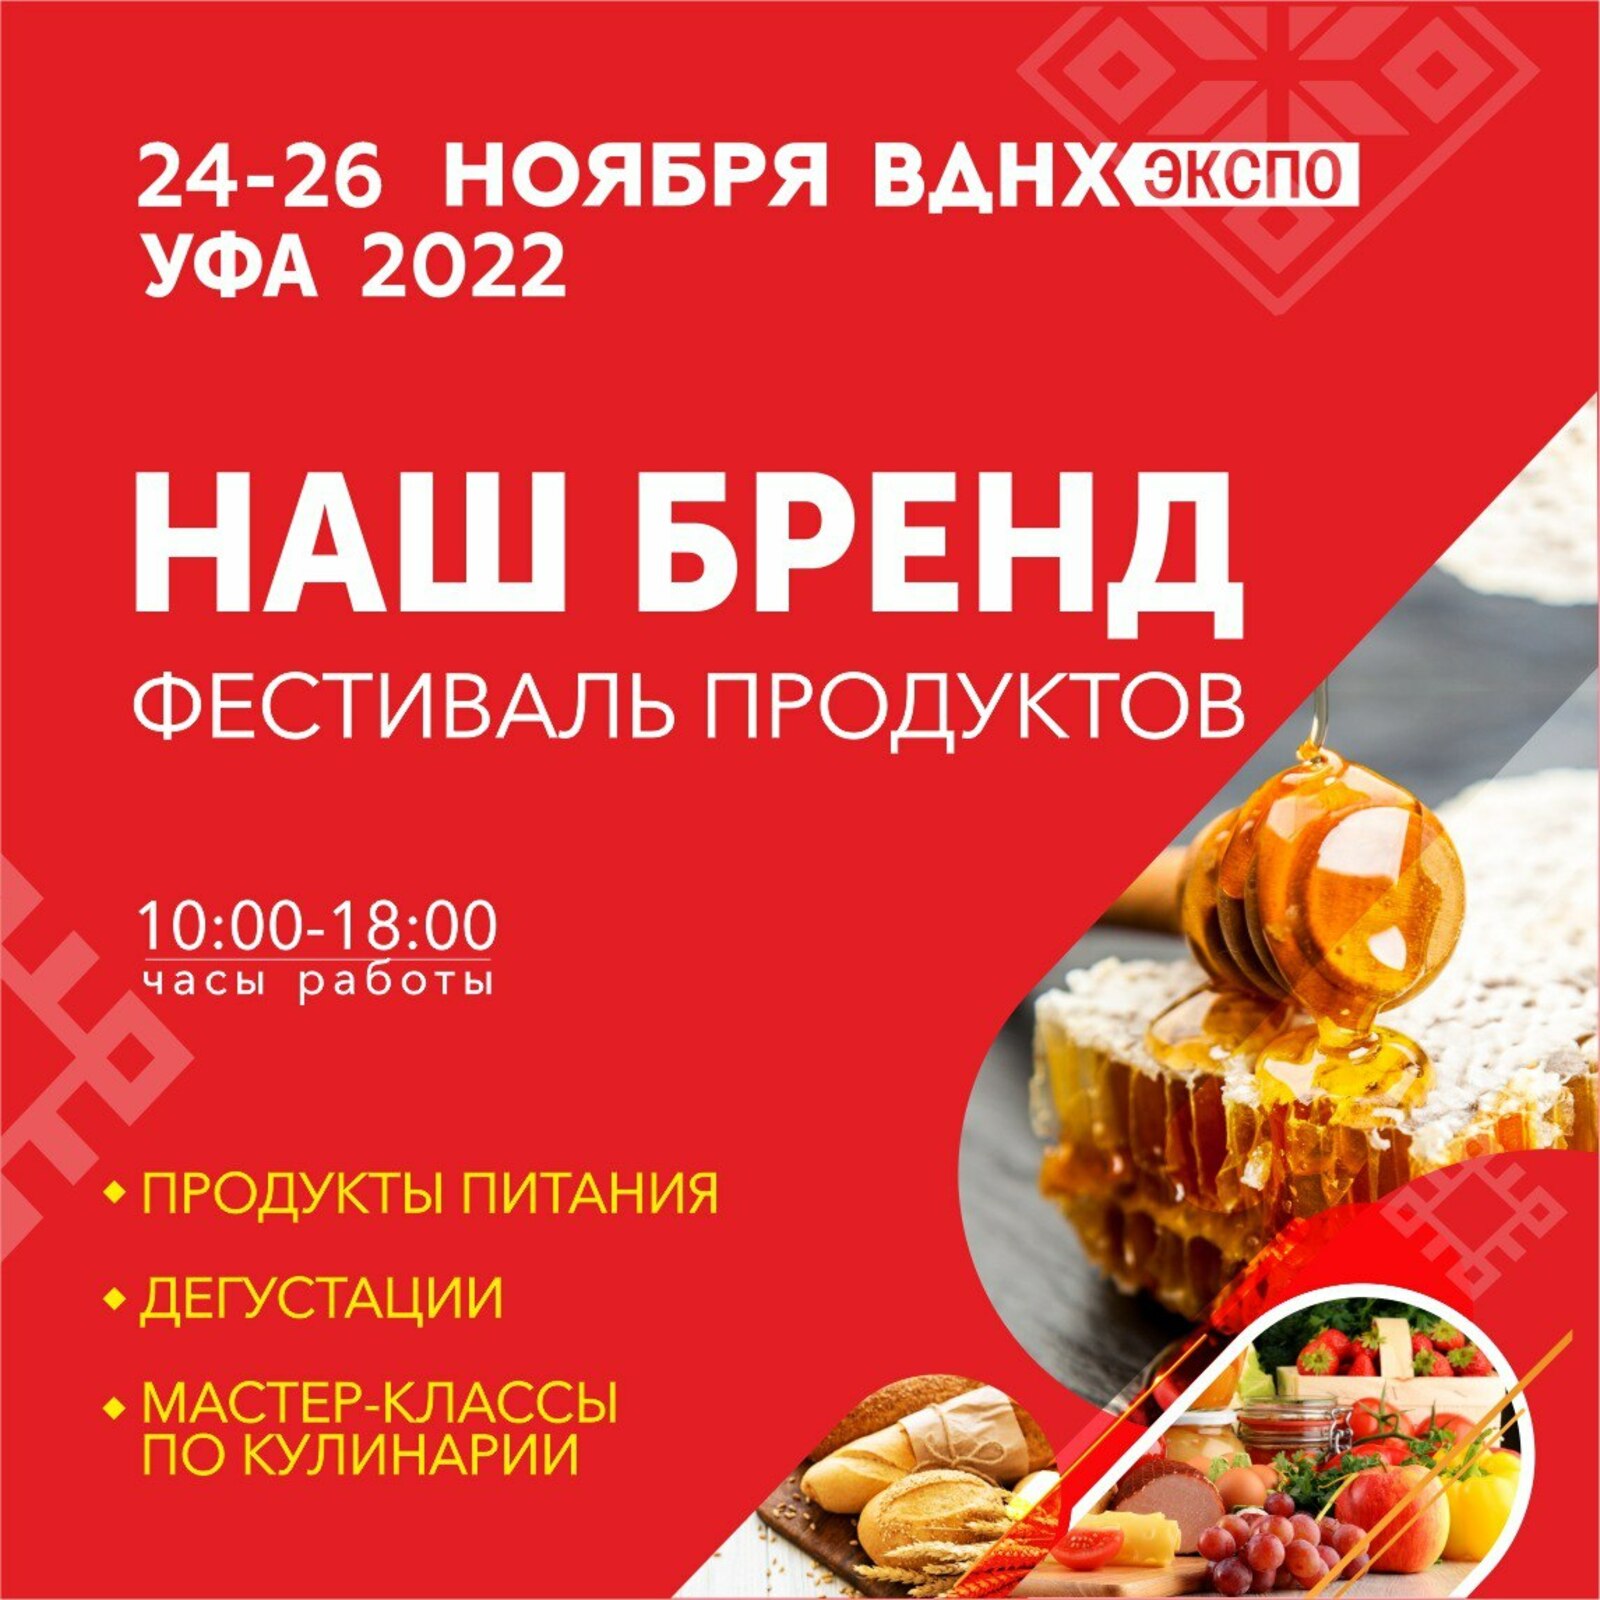 В Башкортостане пройдет VI специализированная выставка «Наш Бренд»